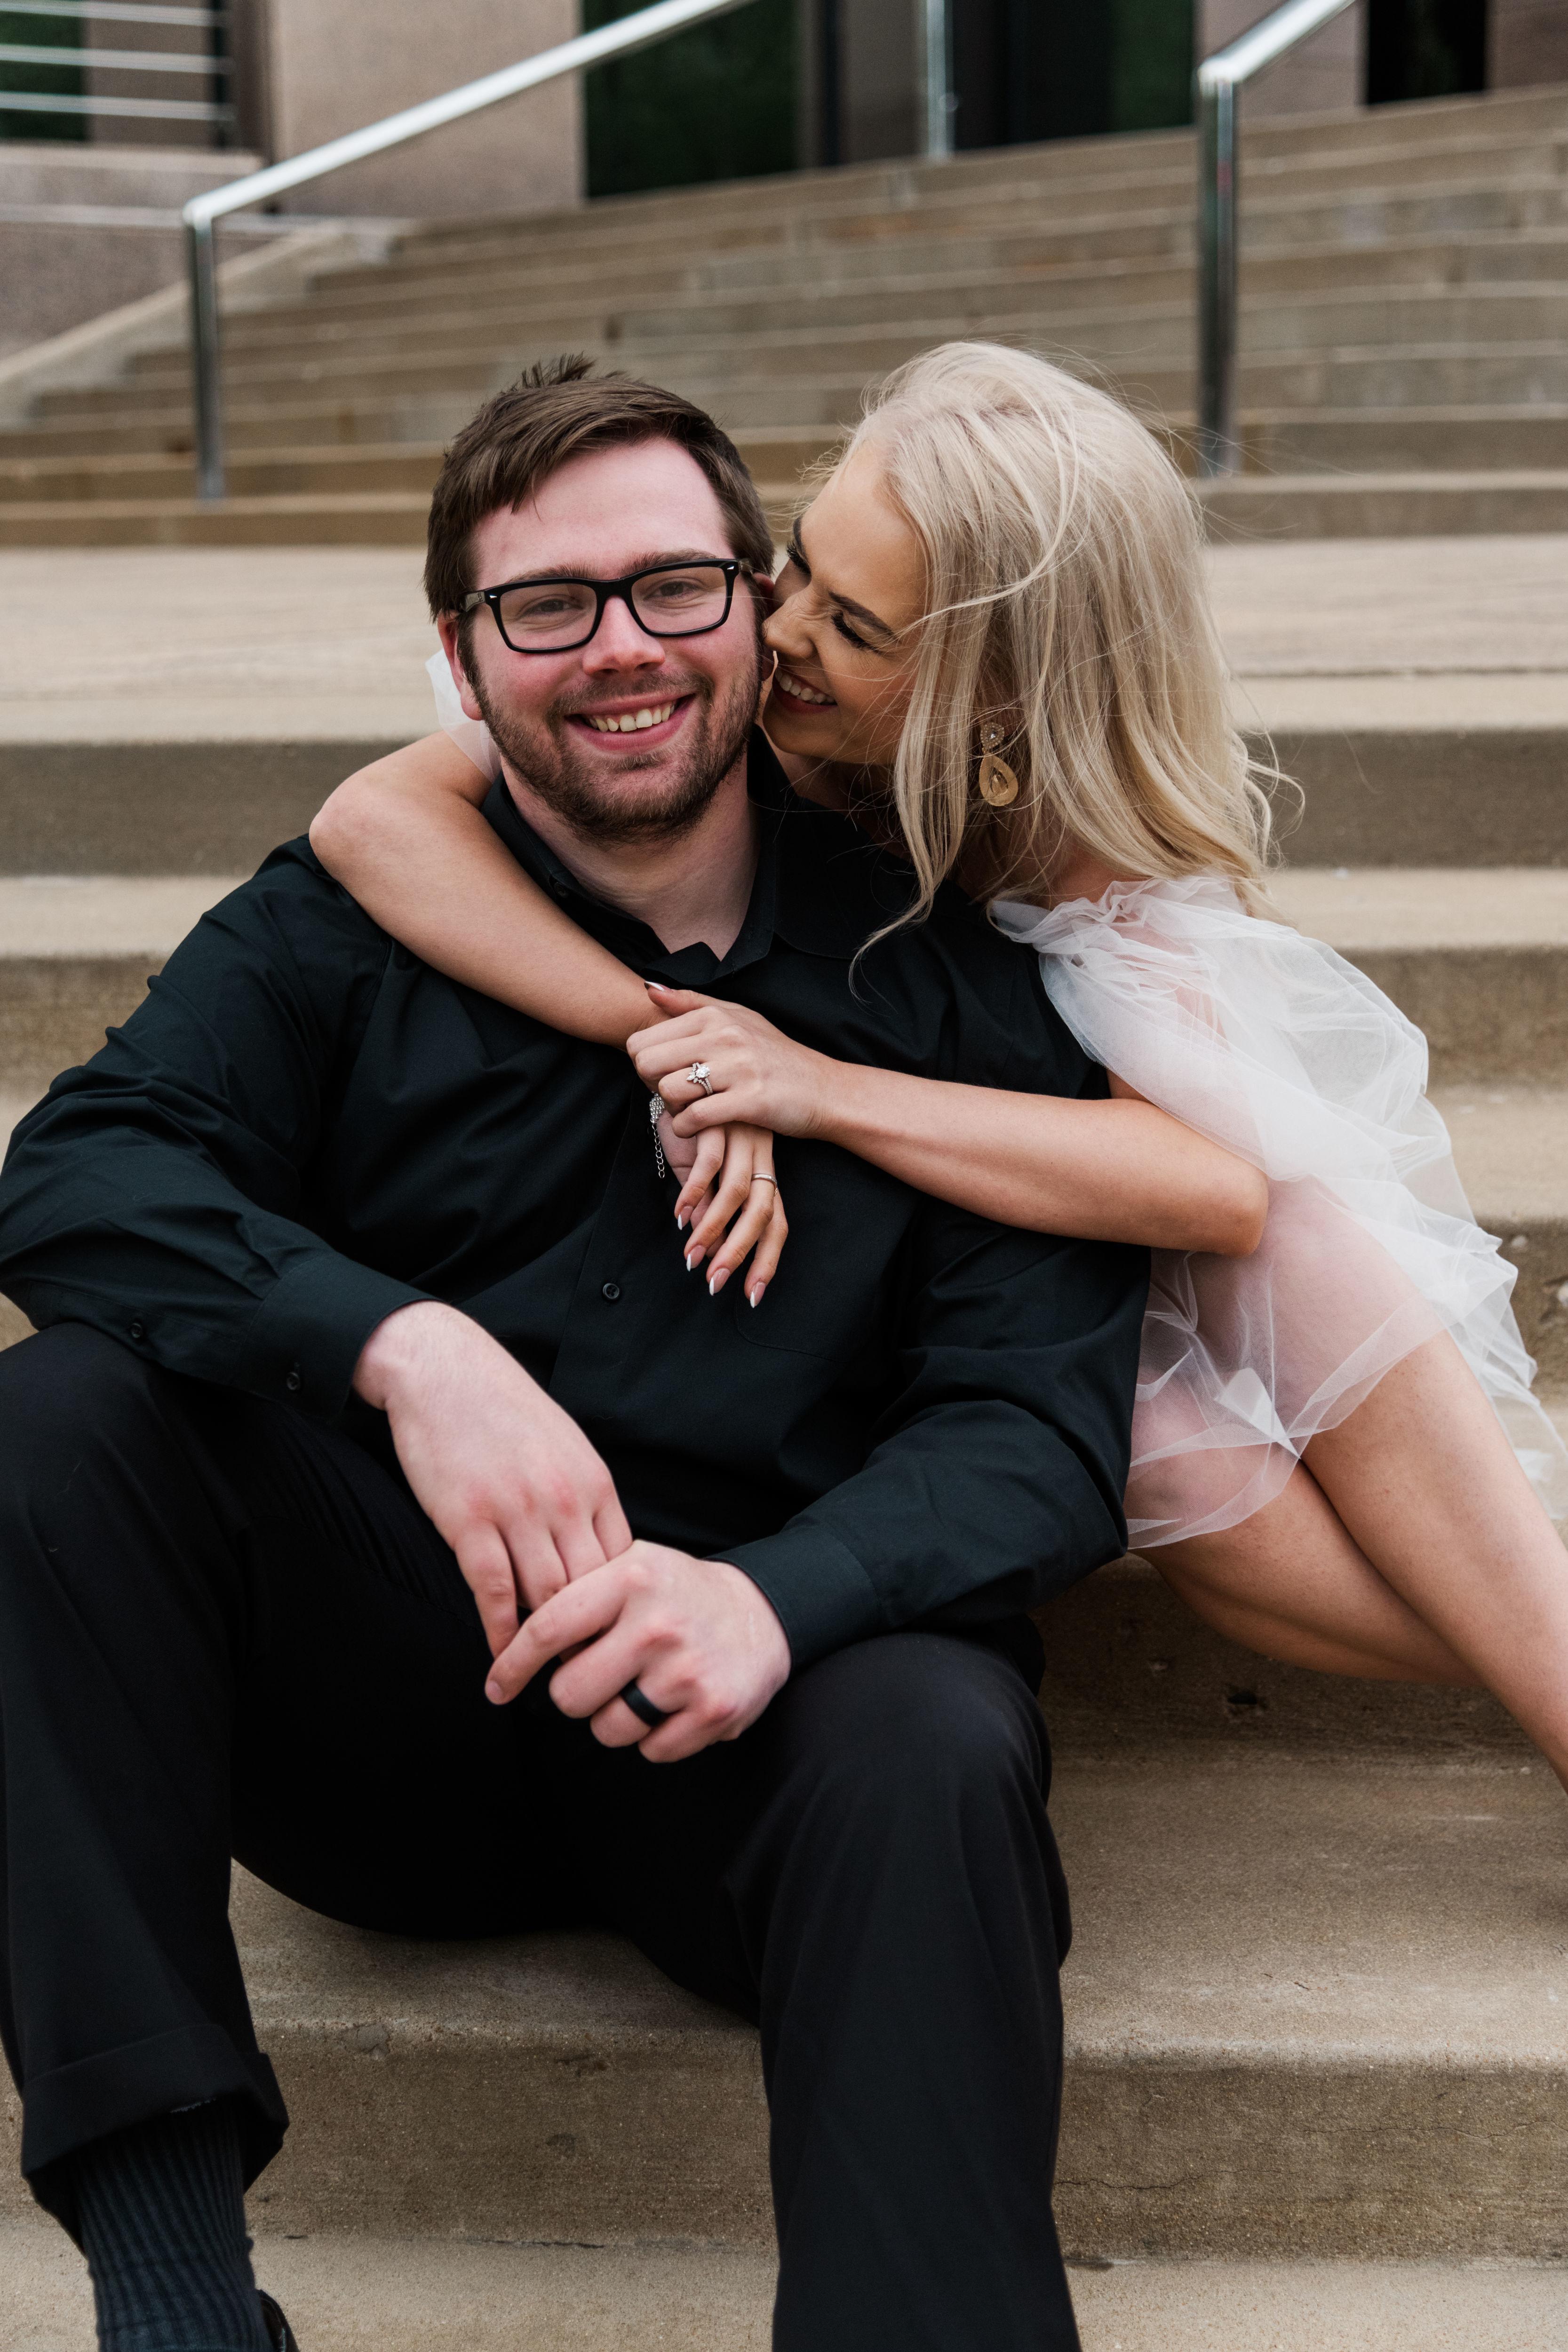 The Wedding Website of Erin Wilkinson and Matthew Schindel